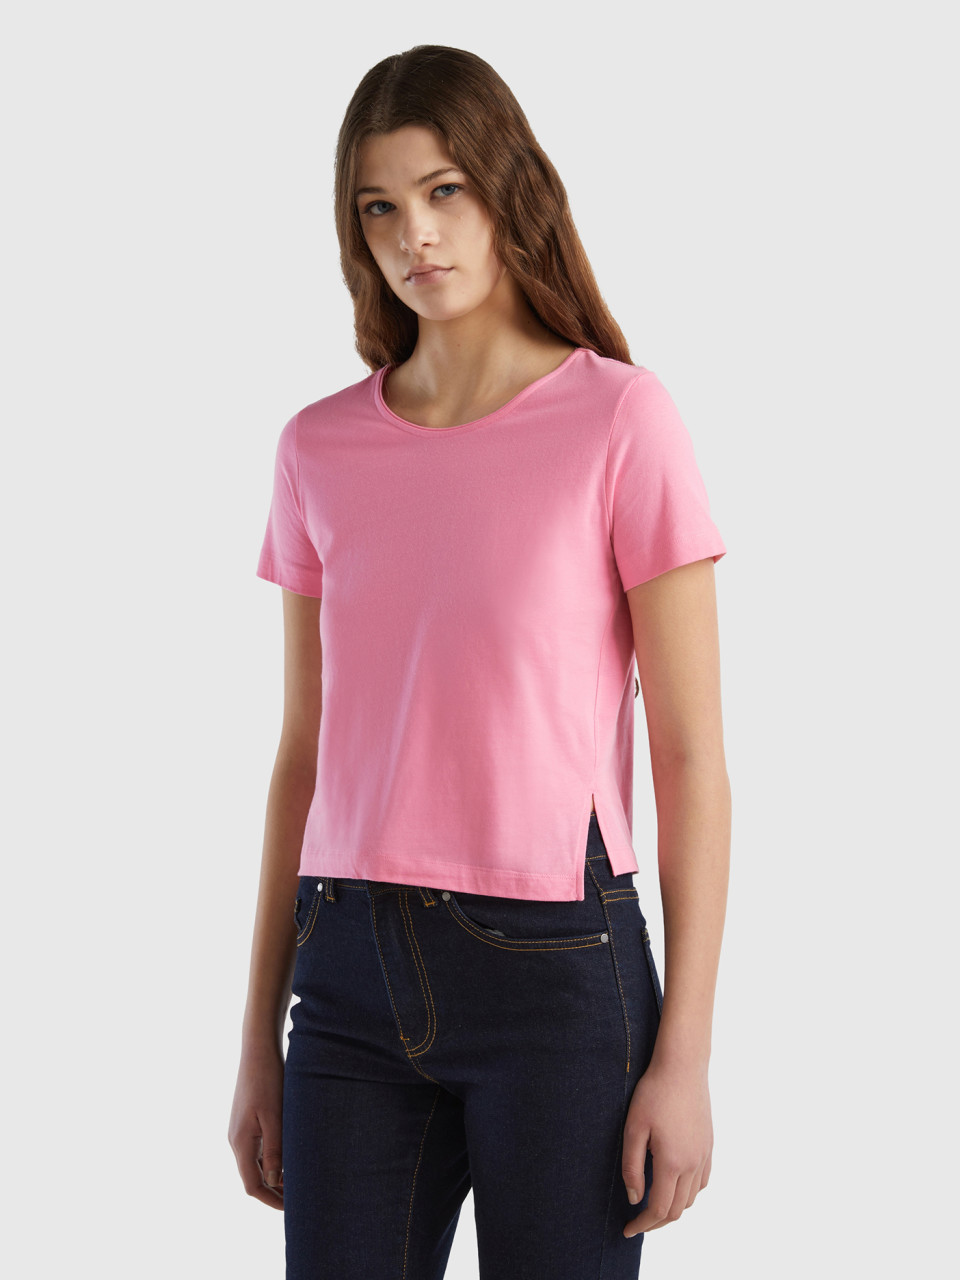 Benetton, Short Sleeve T-shirt With Slit, Pink, Women